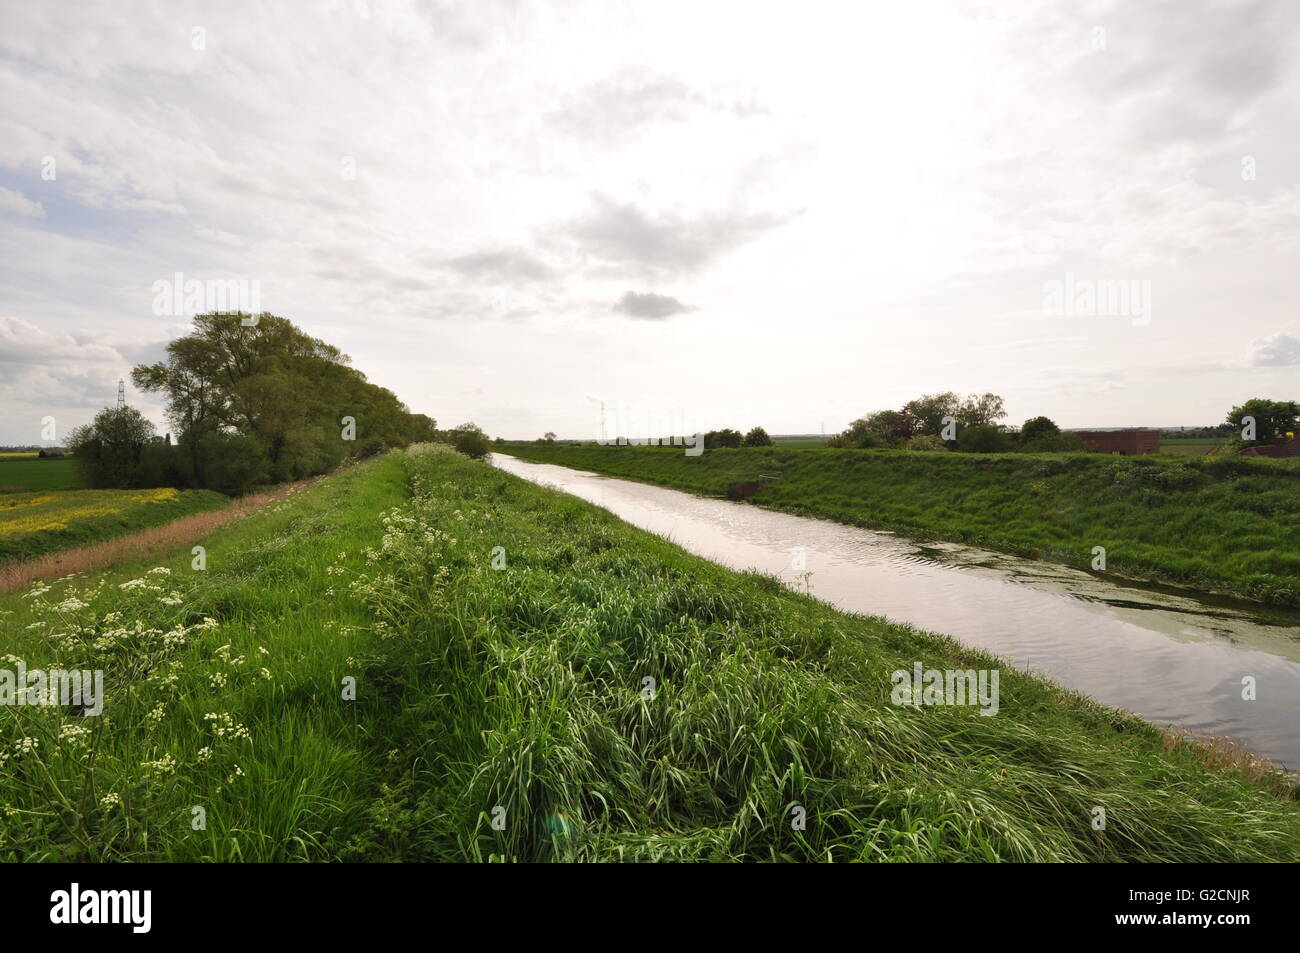 Der River Glen am Ende der Zunge, nach Süd-West, Lincolnshire Fens, UK Stockfoto